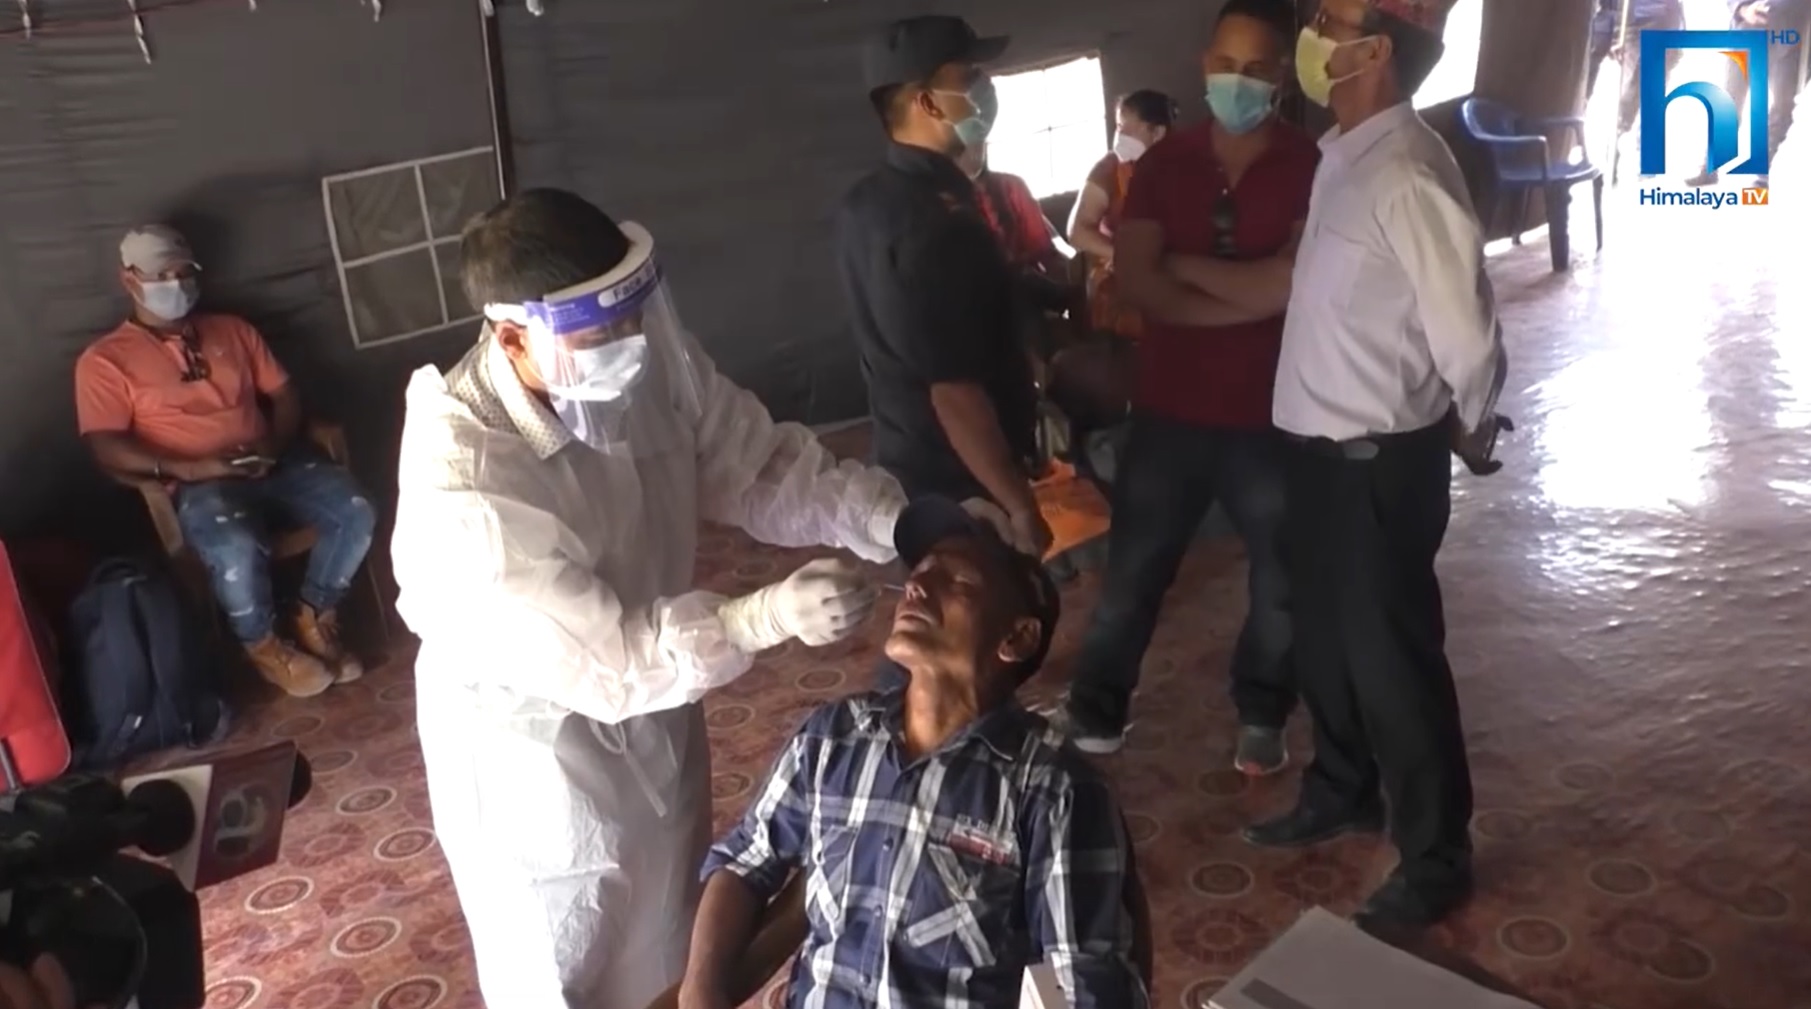 बाँकेमा कोरोना संक्रमण तिब्र, ६१ जनामा परीक्षण गर्दा २१ जना संक्रमित (भिडियो रिपोर्टसहित)